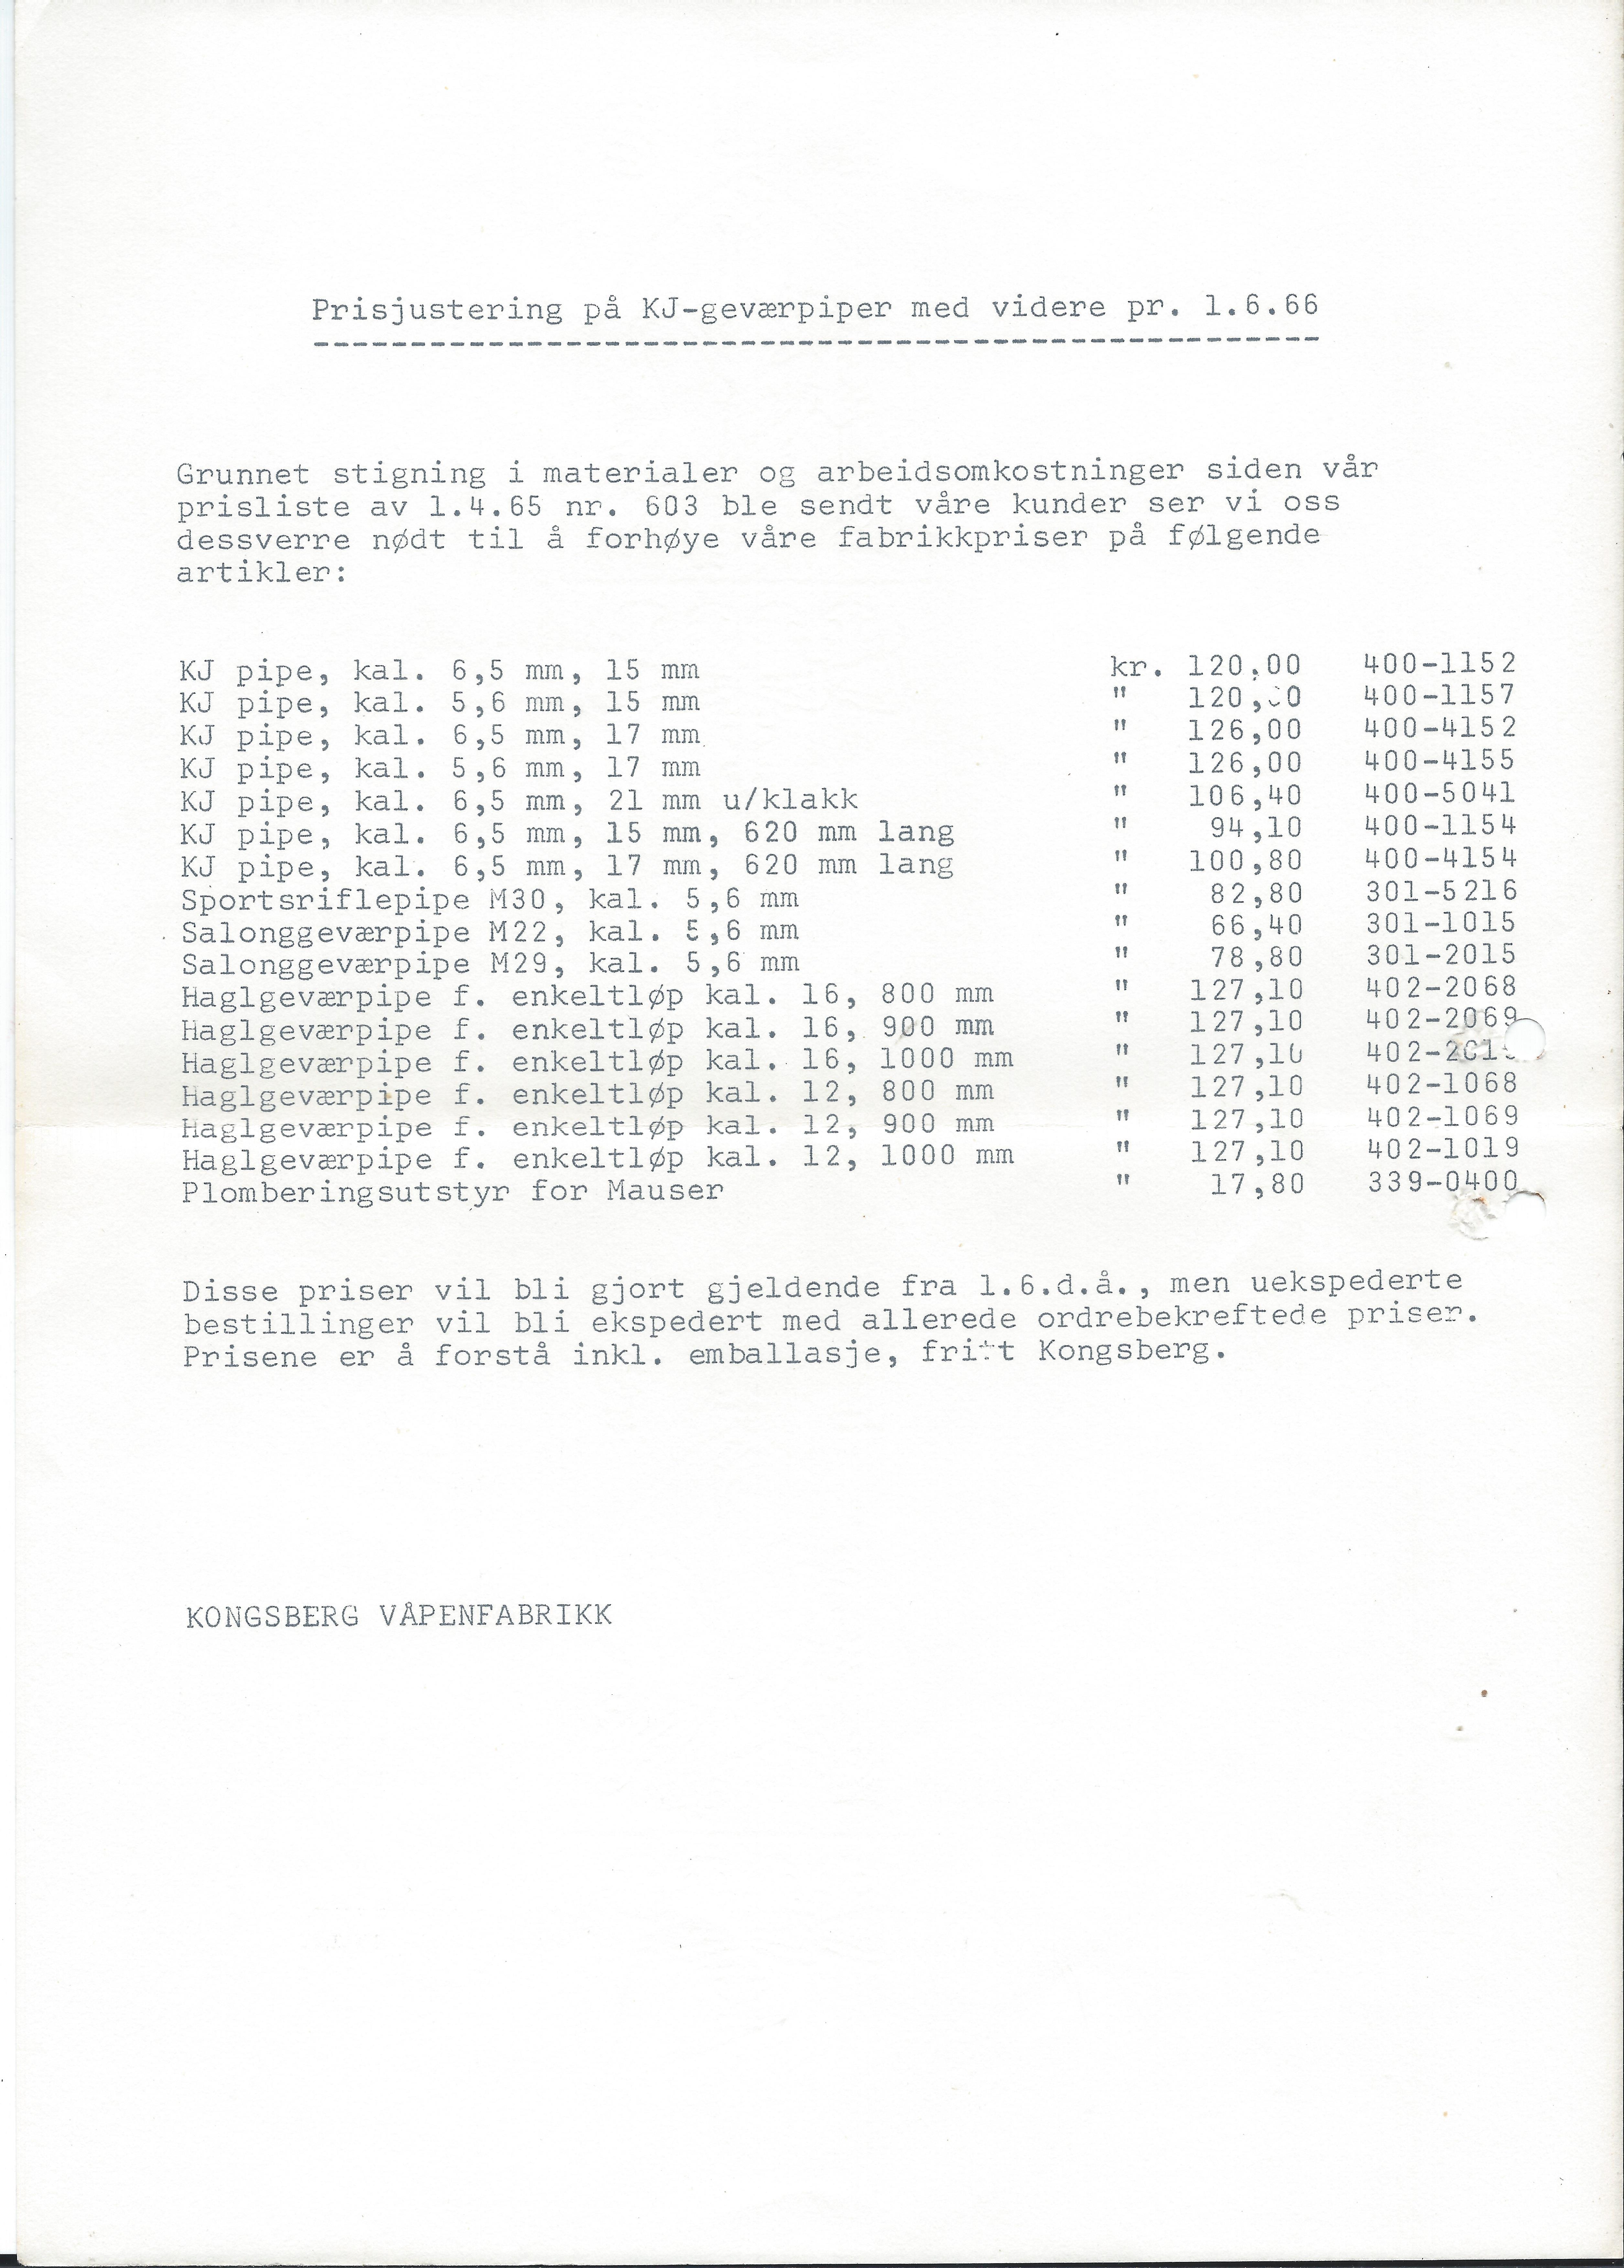 ./doc/KV/KV-Prisliste-Deler-Nr603-01.04.1965-Oppdatering-1.jpg